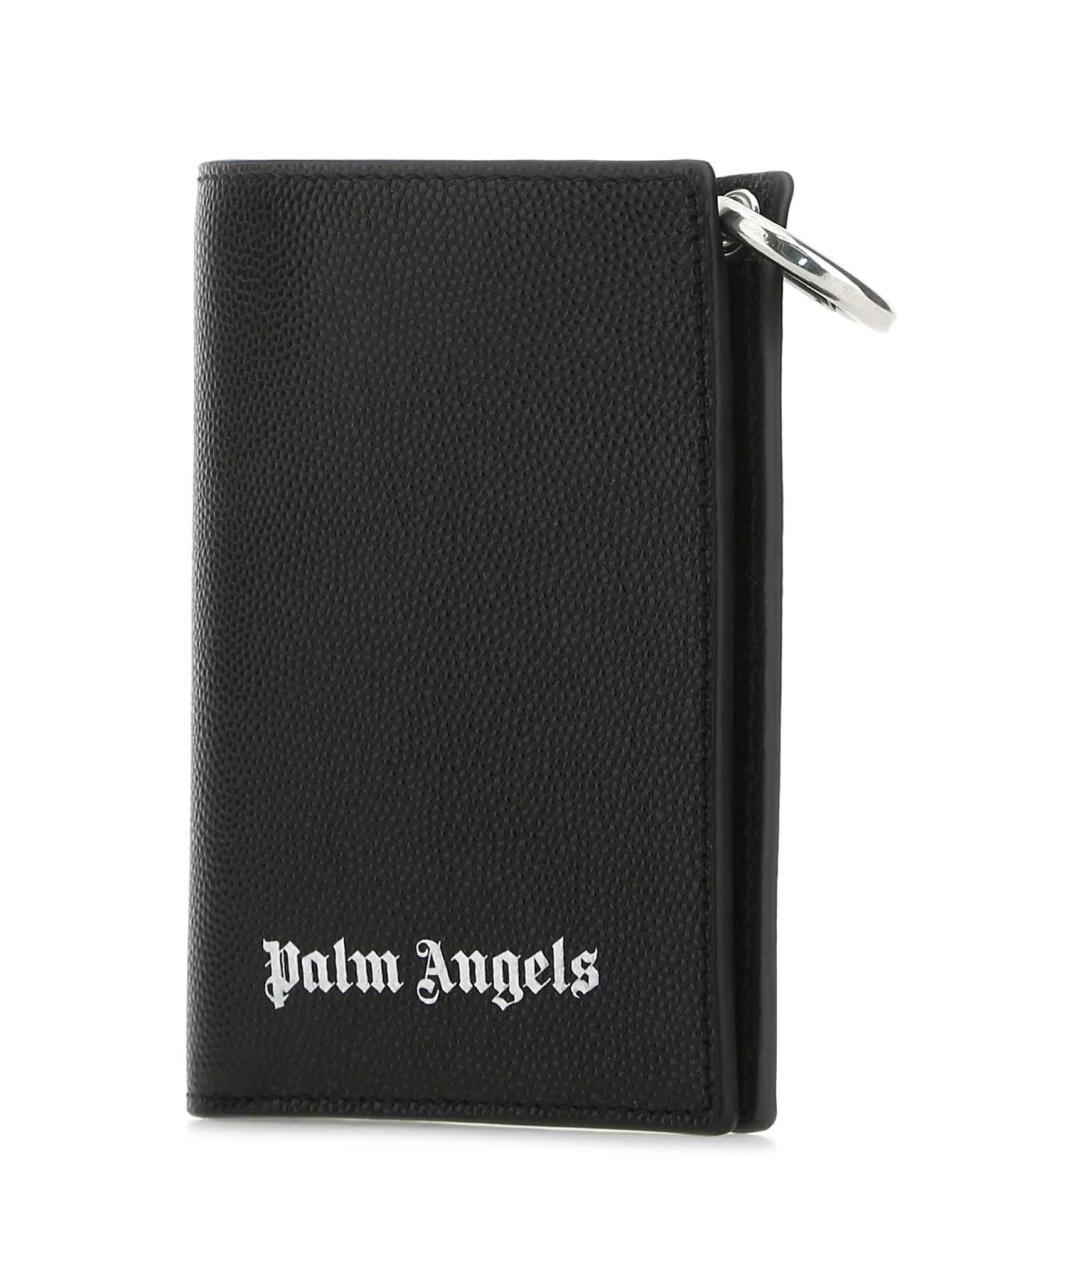 PALM ANGELS Черный кожаный кошелек, фото 2